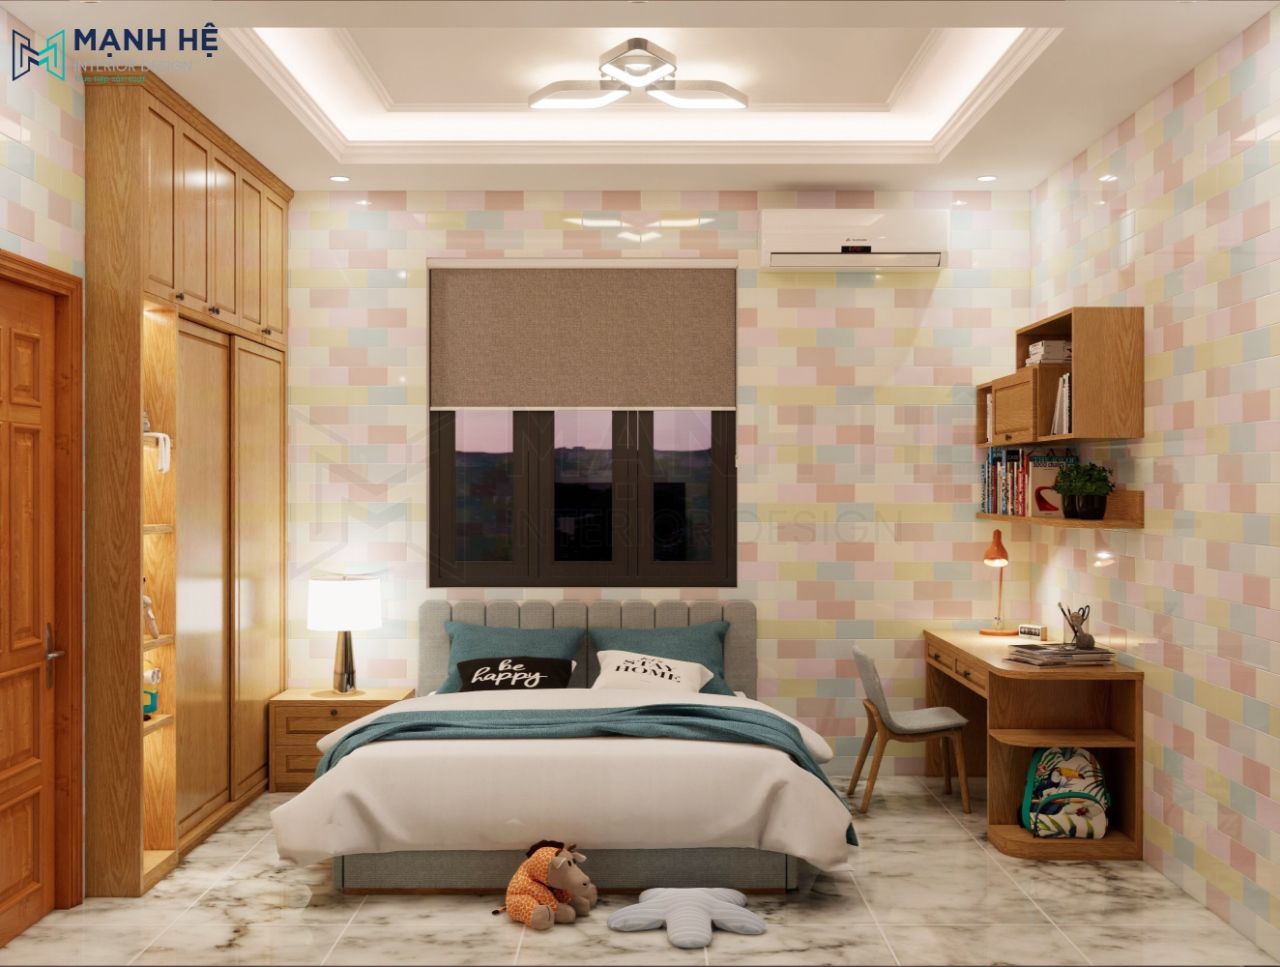 Trang trí phòng ngủ gỗ sồi cho bé bằng những món decor bắt mắt